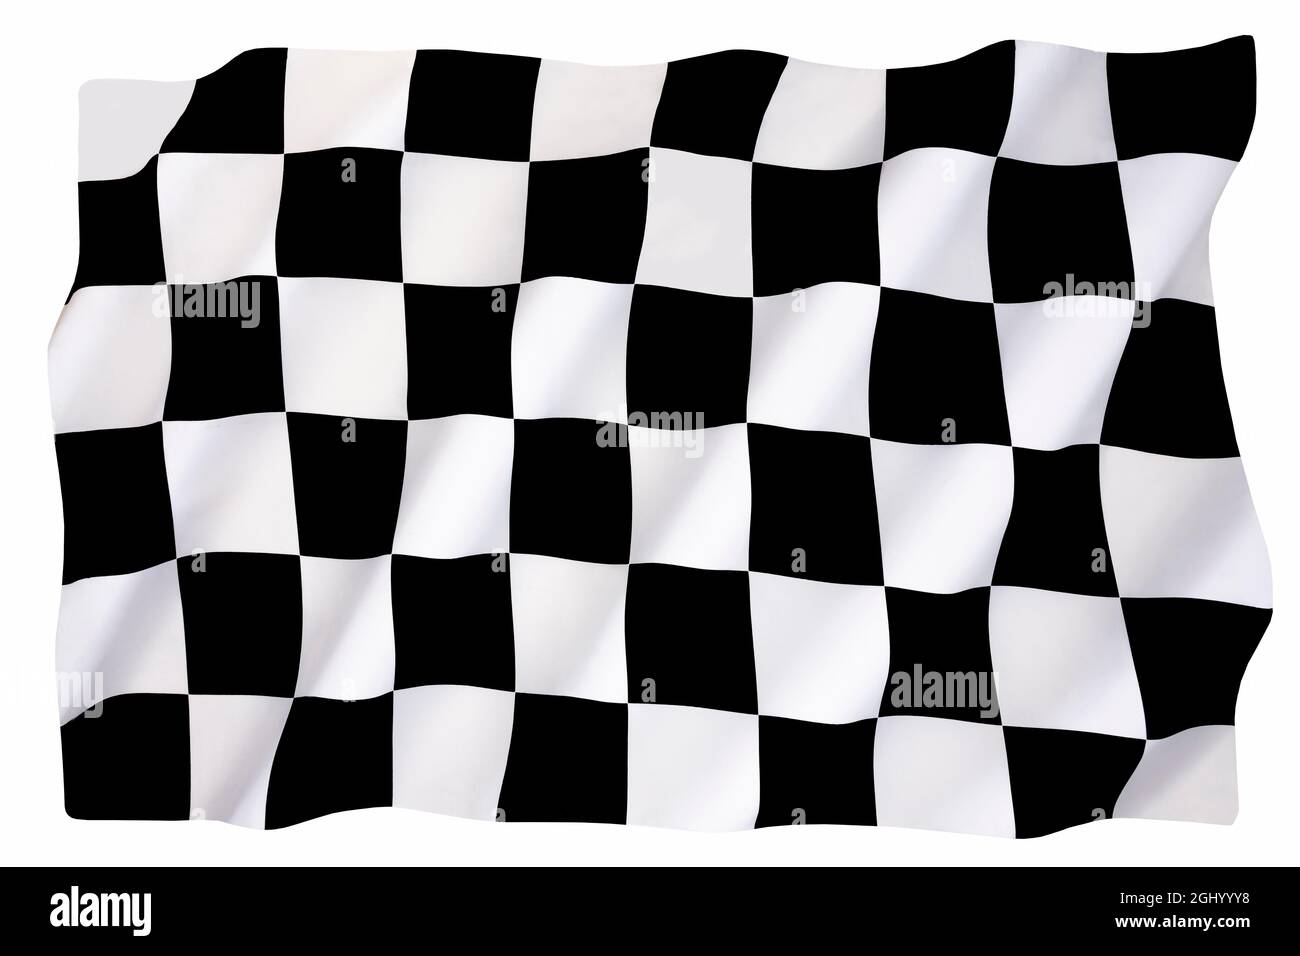 Chequered Flag - tradizionalmente utilizzato nelle corse automobilistiche e nei motorsport simili per indicare la fine di una gara. Il primo passato la bandiera a scacchi è la vittoria Foto Stock